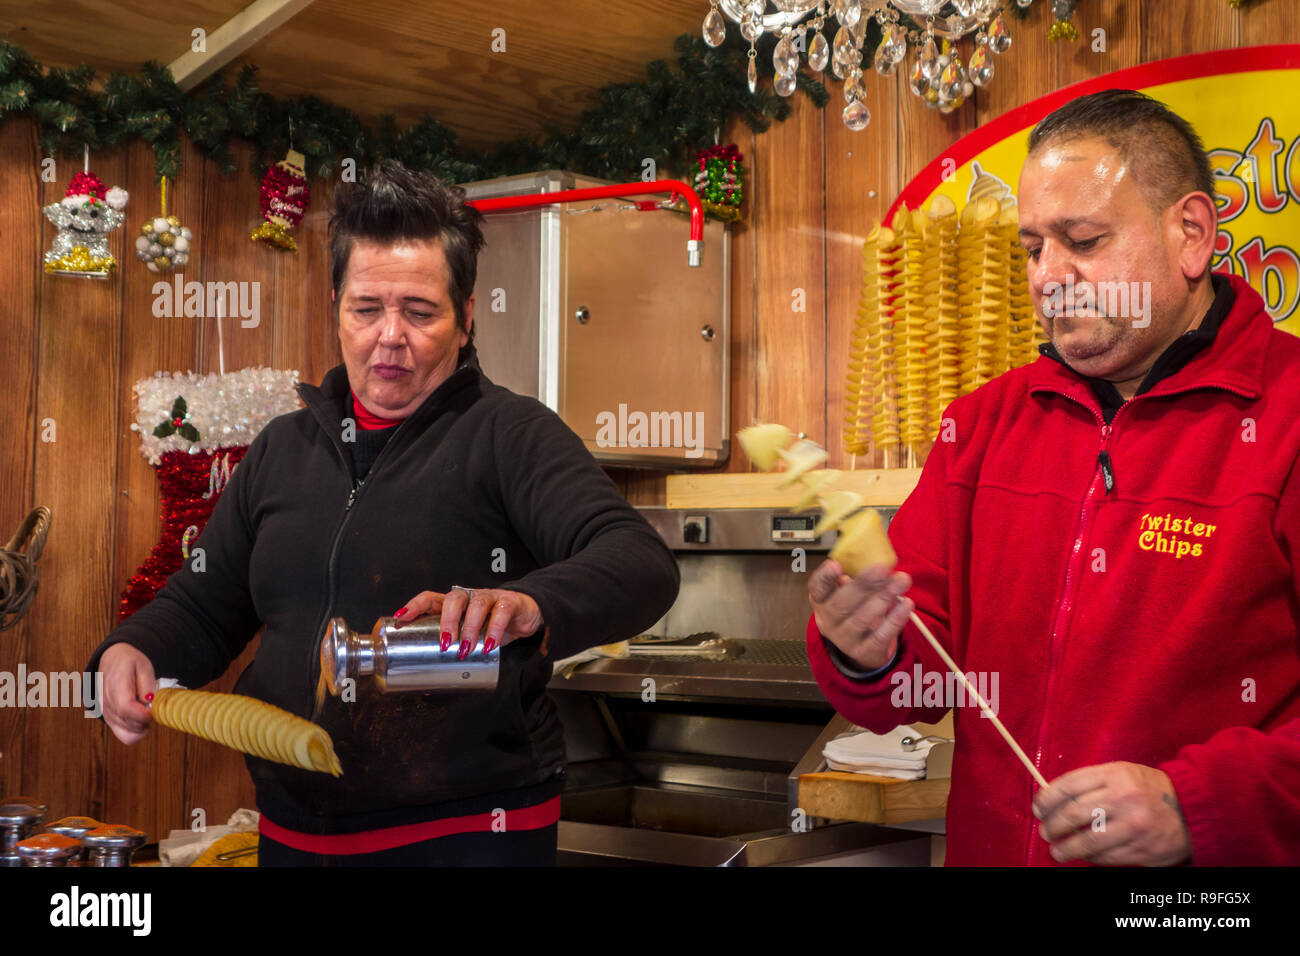 Les vendeurs de rue en stand de restauration rapide / vente twister chips croustilles torsadée au marché de Noël en hiver dans la ville de Gand, Flandre orientale, Belgique Banque D'Images